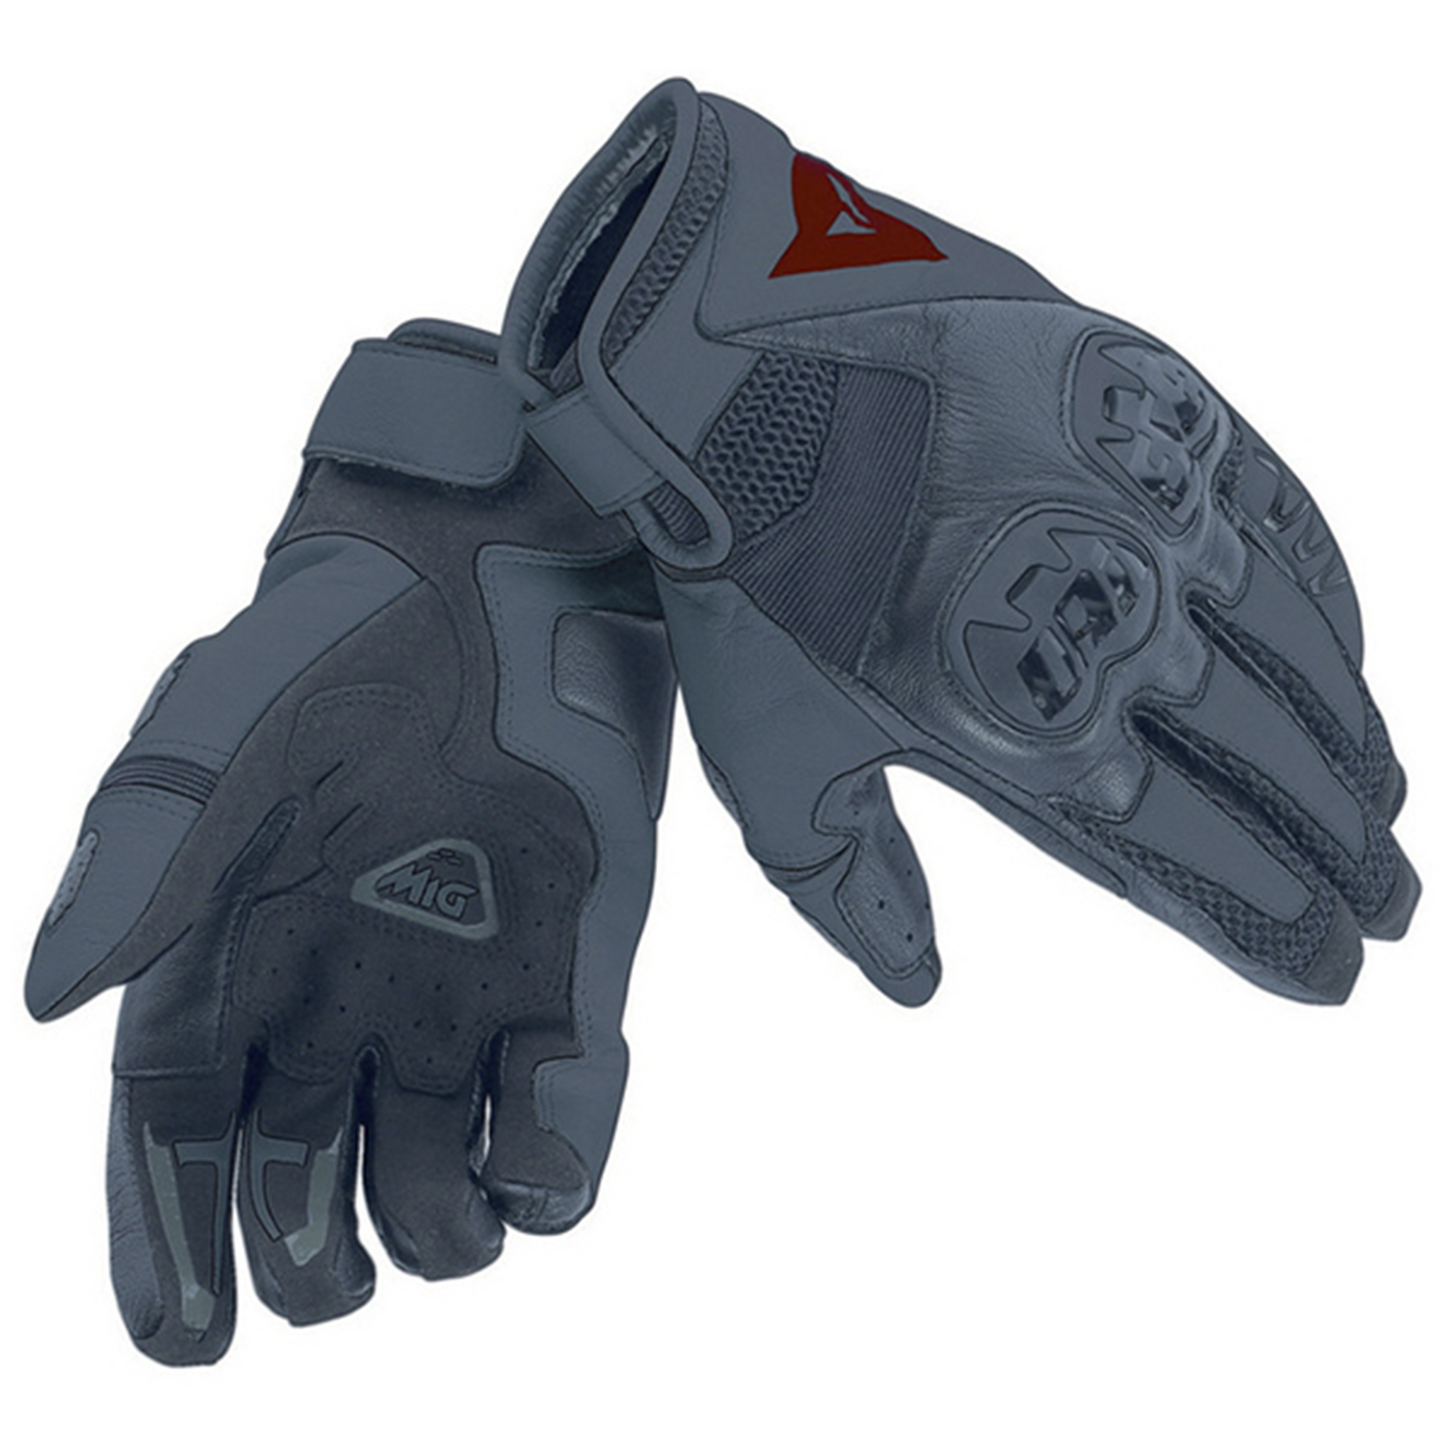 Dainese Mig C2 Unisex Gloves (691)